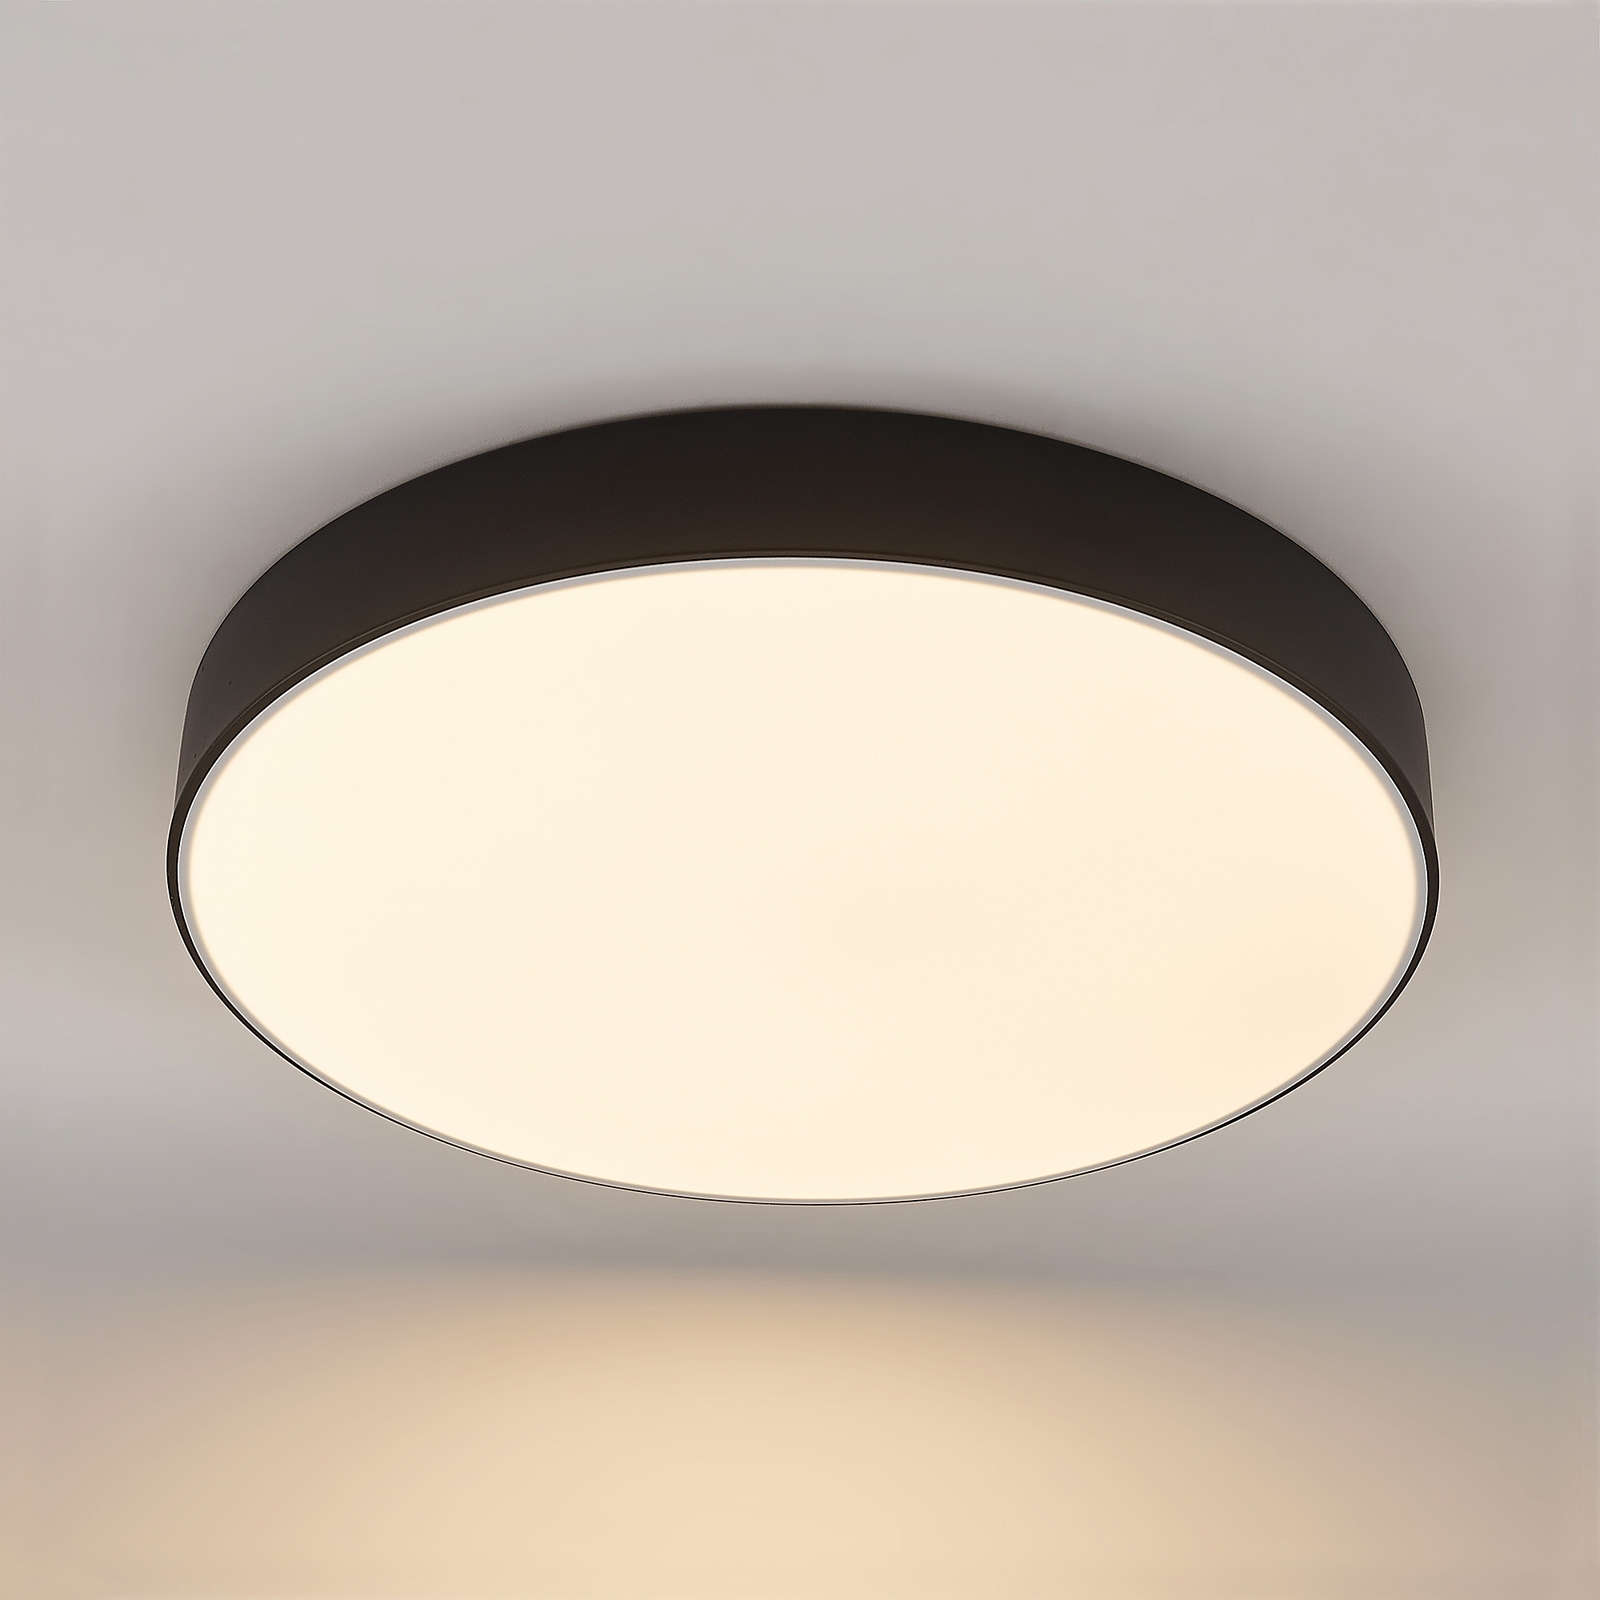 lekkage Refrein Tapijt Lindby Simera LED plafondlamp 50cm, zwart | Lampen24.nl